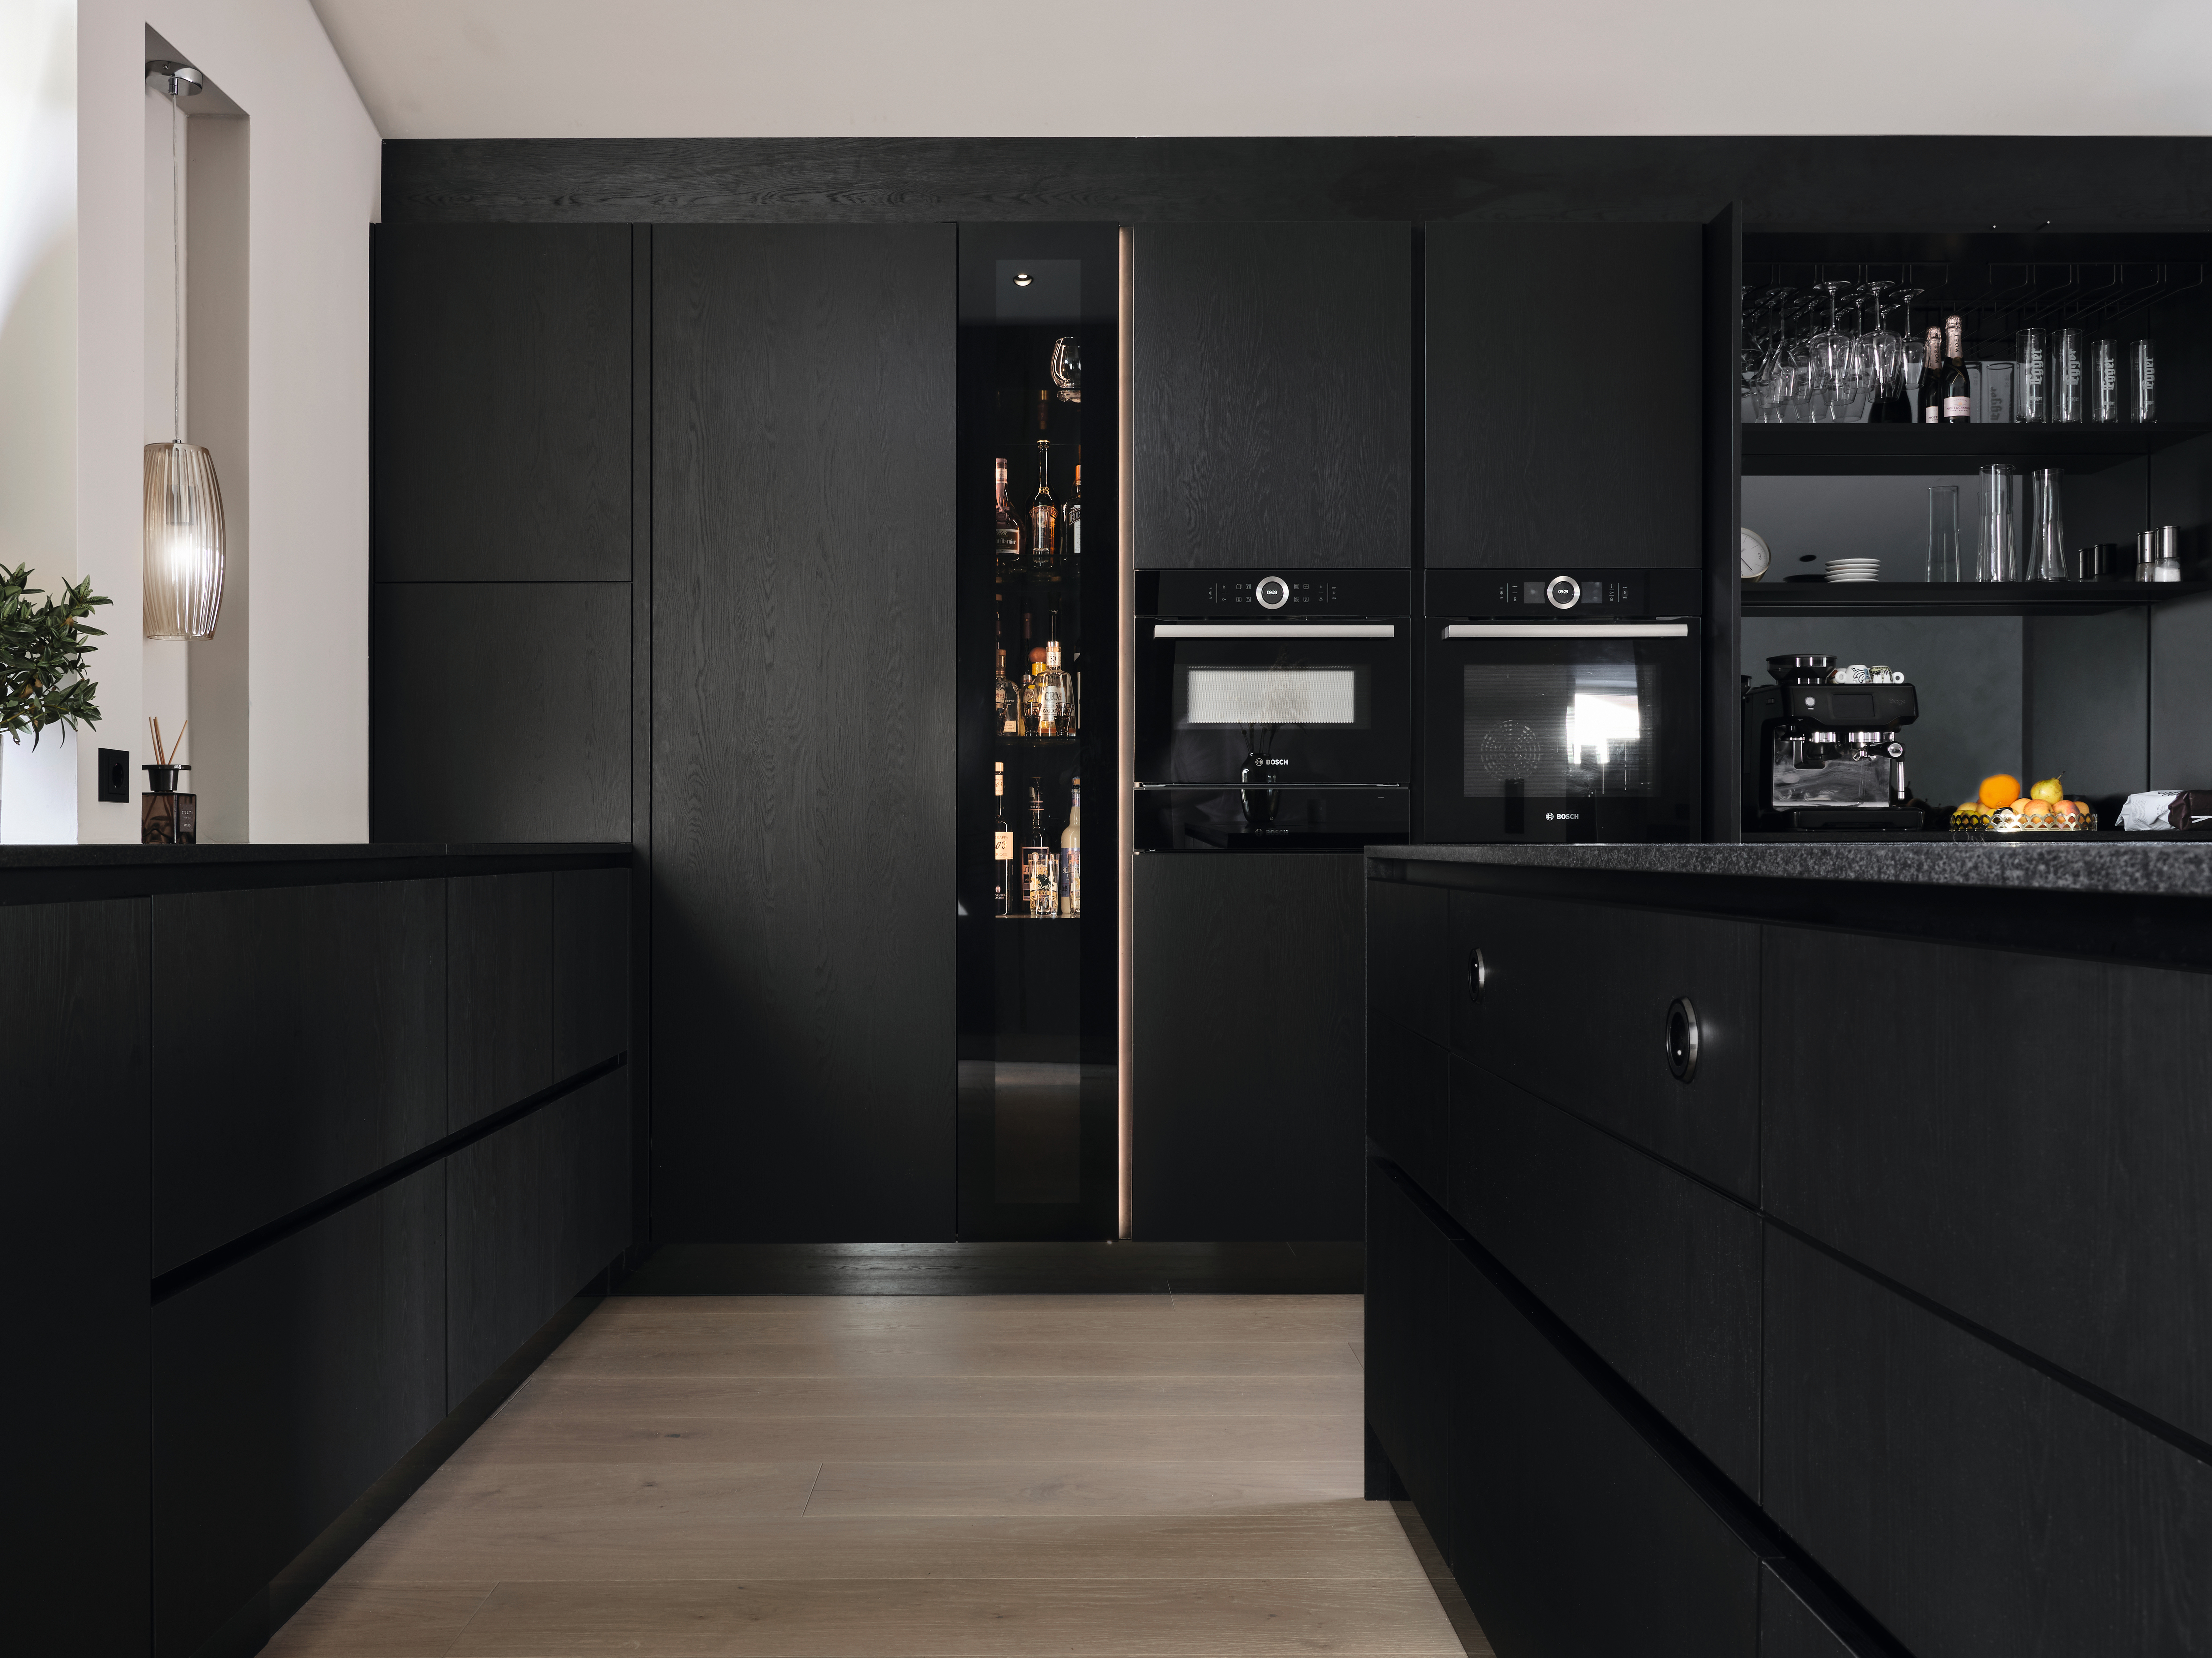 Gli elementi frontali dei mobili neri aggiungono un tocco moderno alla cucina.